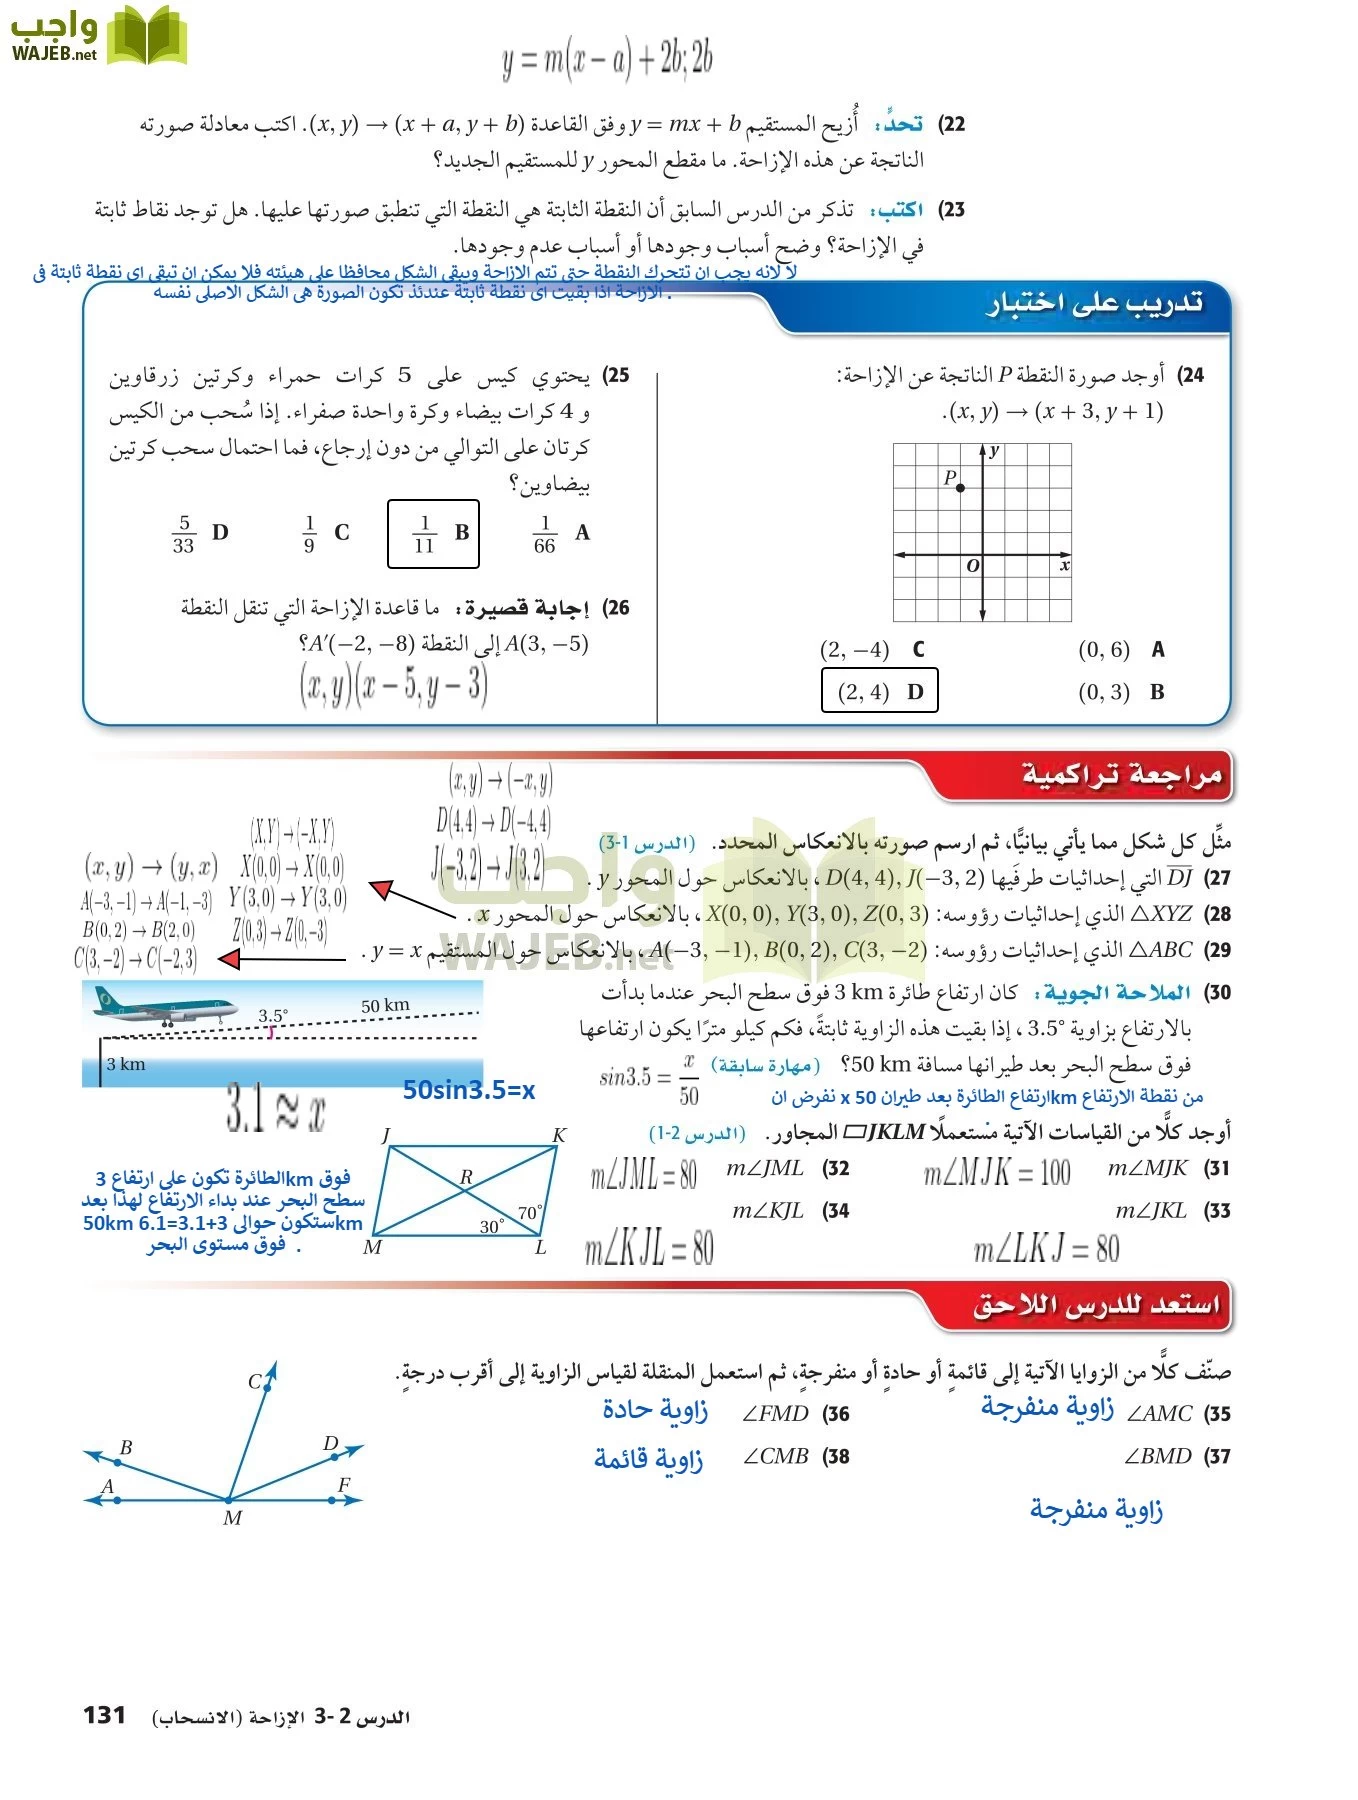 رياضيات 2 مقررات page-130